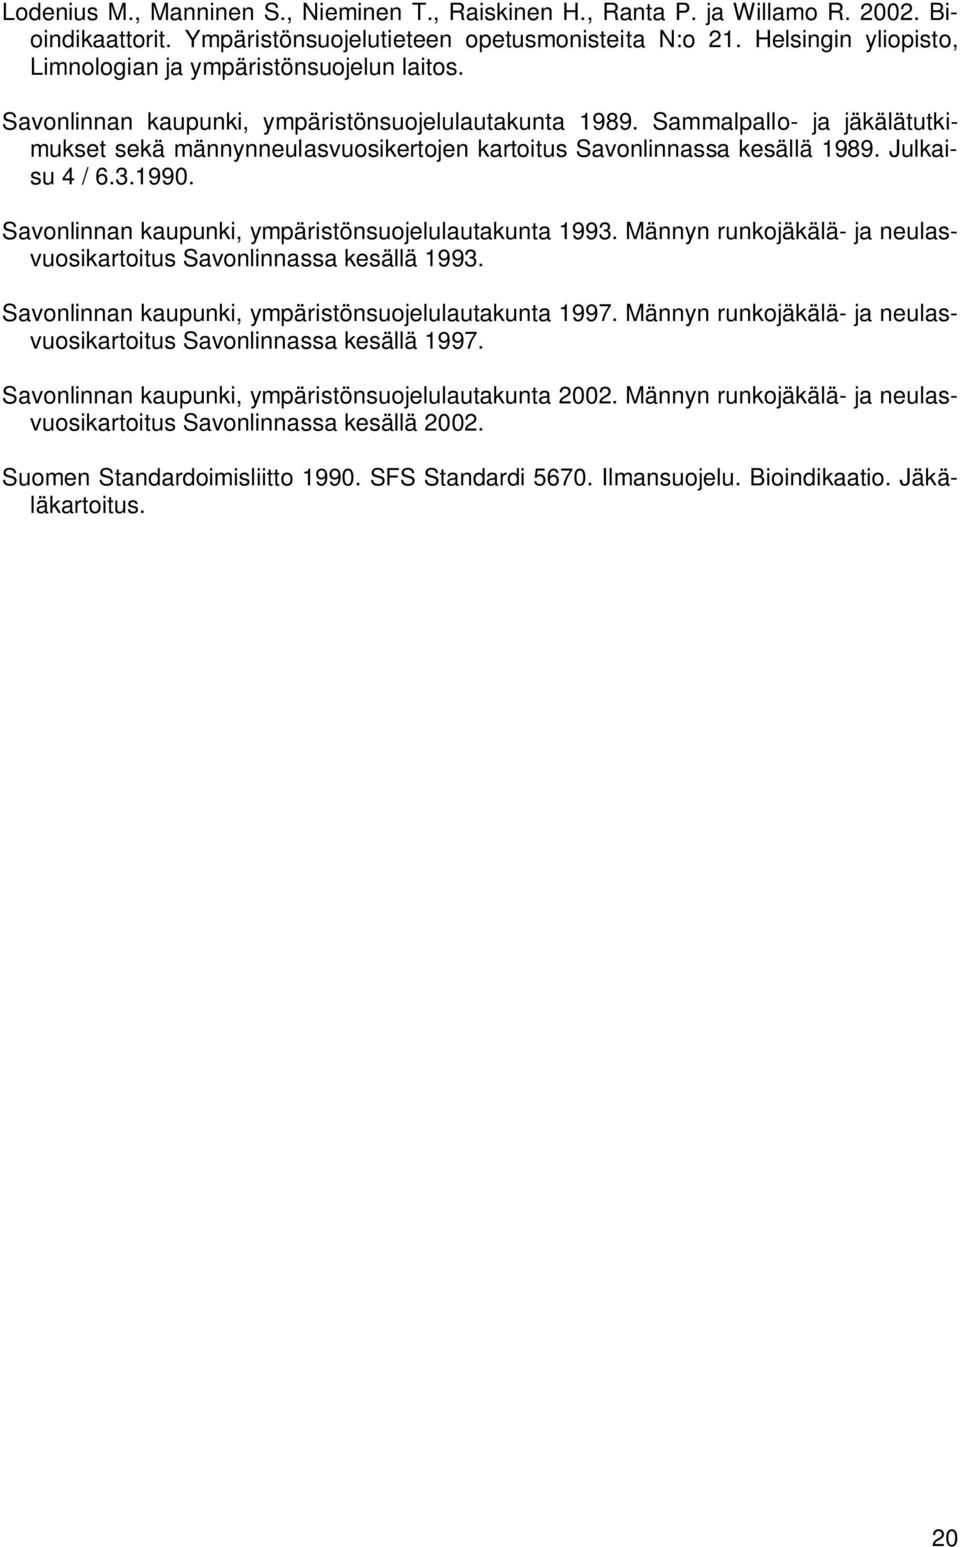 Sammalpallo- ja jäkälätutkimukset sekä männynneulasvuosikertojen kartoitus Savonlinnassa kesällä 1989. Julkaisu 4 / 6.3.1990. Savonlinnan kaupunki, ympäristönsuojelulautakunta 1993.